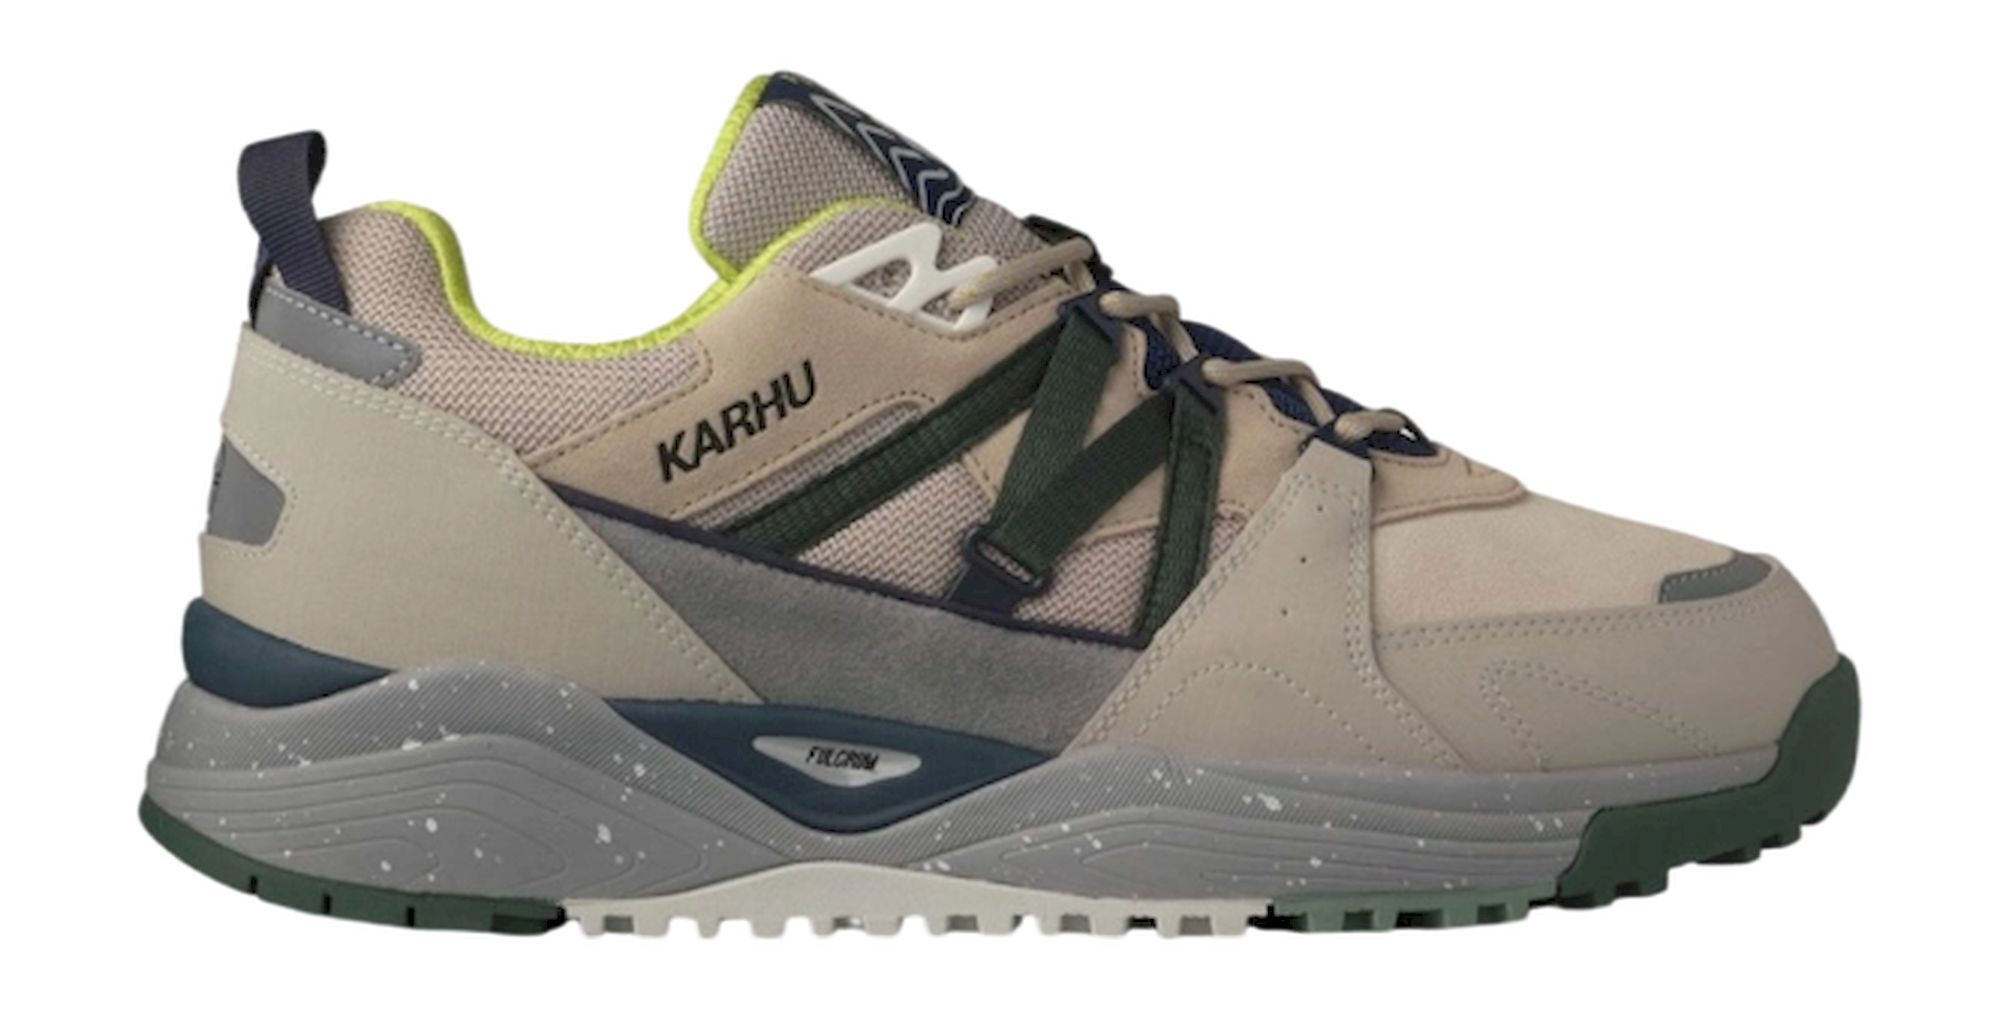 Karhu Fusion XC - Lifestyle shoes | Hardloop